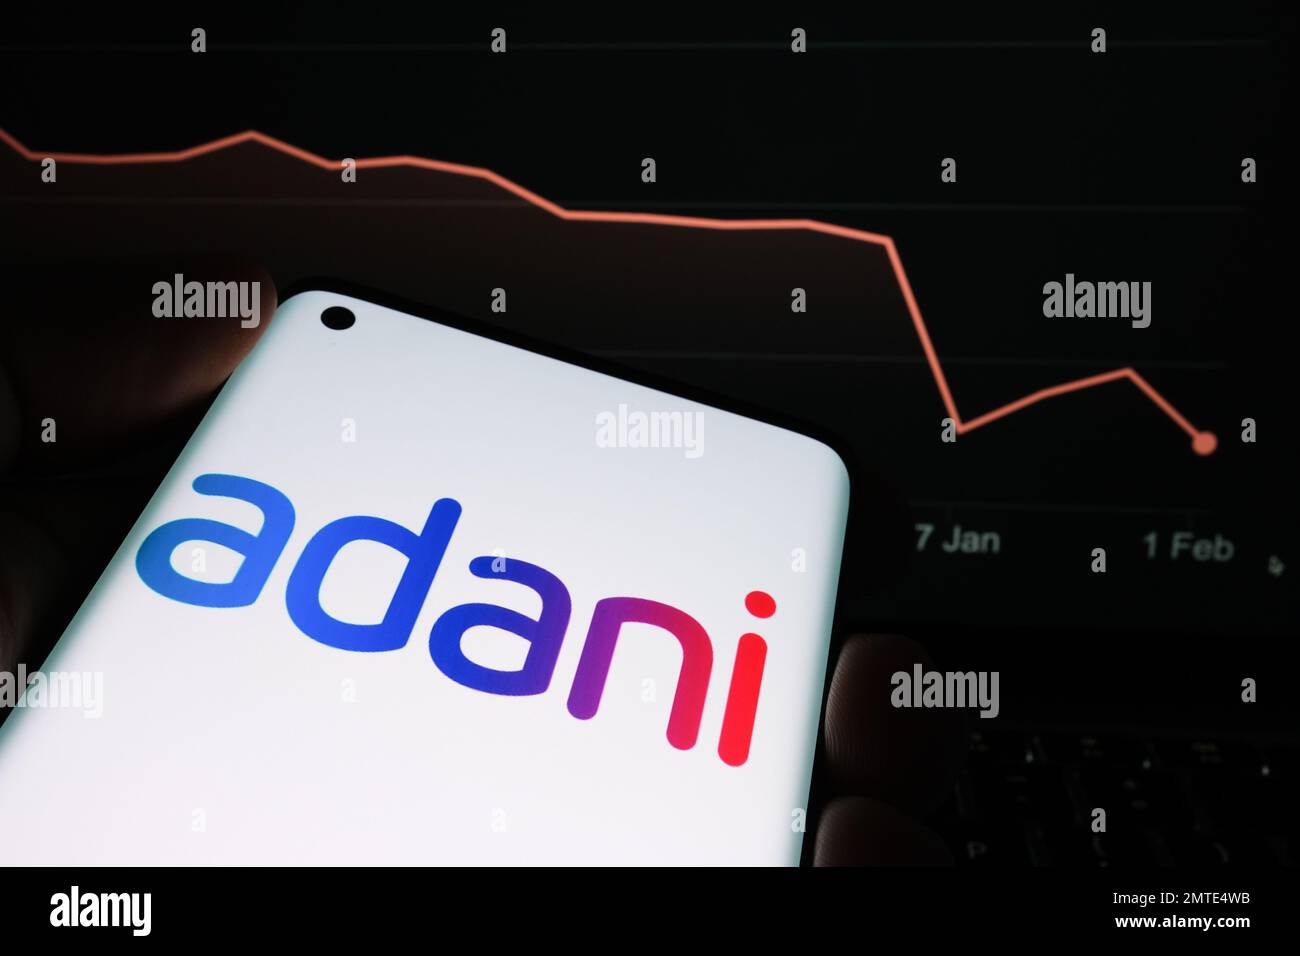 Logotipo de Adani Group visto en la pantalla del teléfono inteligente y gráfico de caída del precio de las acciones de la empresa visto en el fondo borroso. Gráfico de valores reales durante un mes Foto de stock